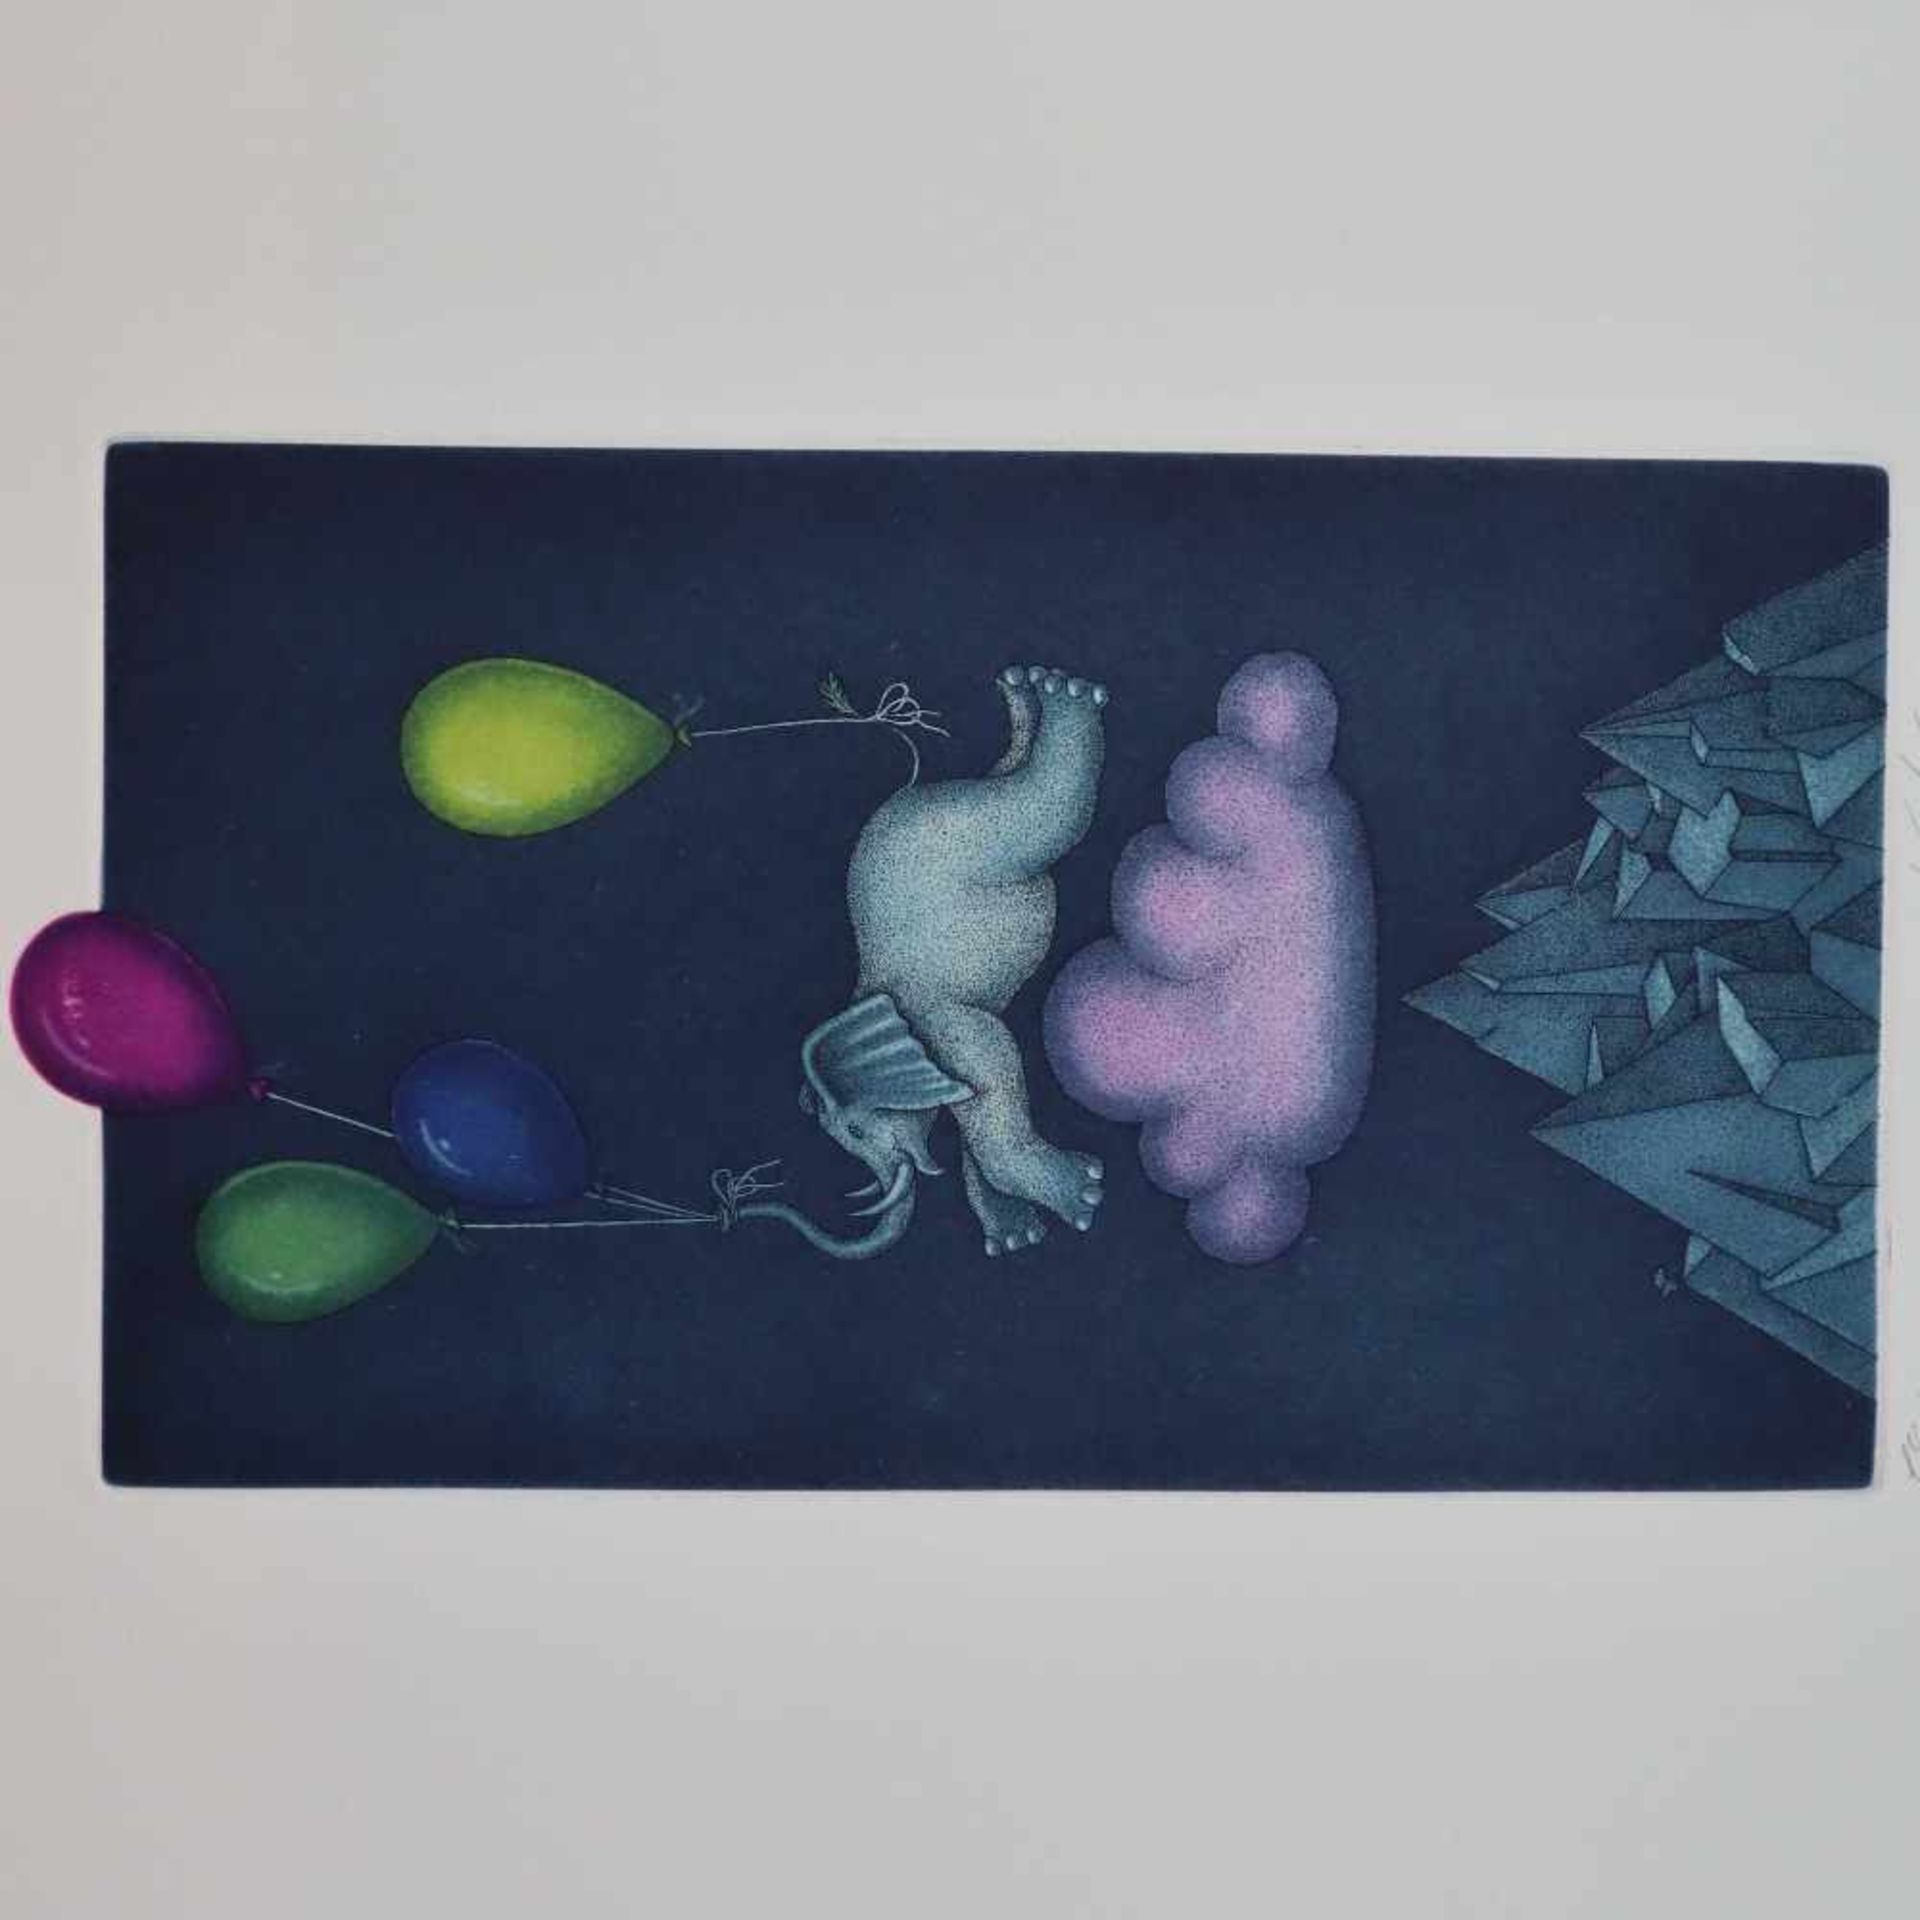 Kühn, Volker (*1948 Bremen, deutscher Bildhauer/Objektkünstler und Grafiker) - Elefant,